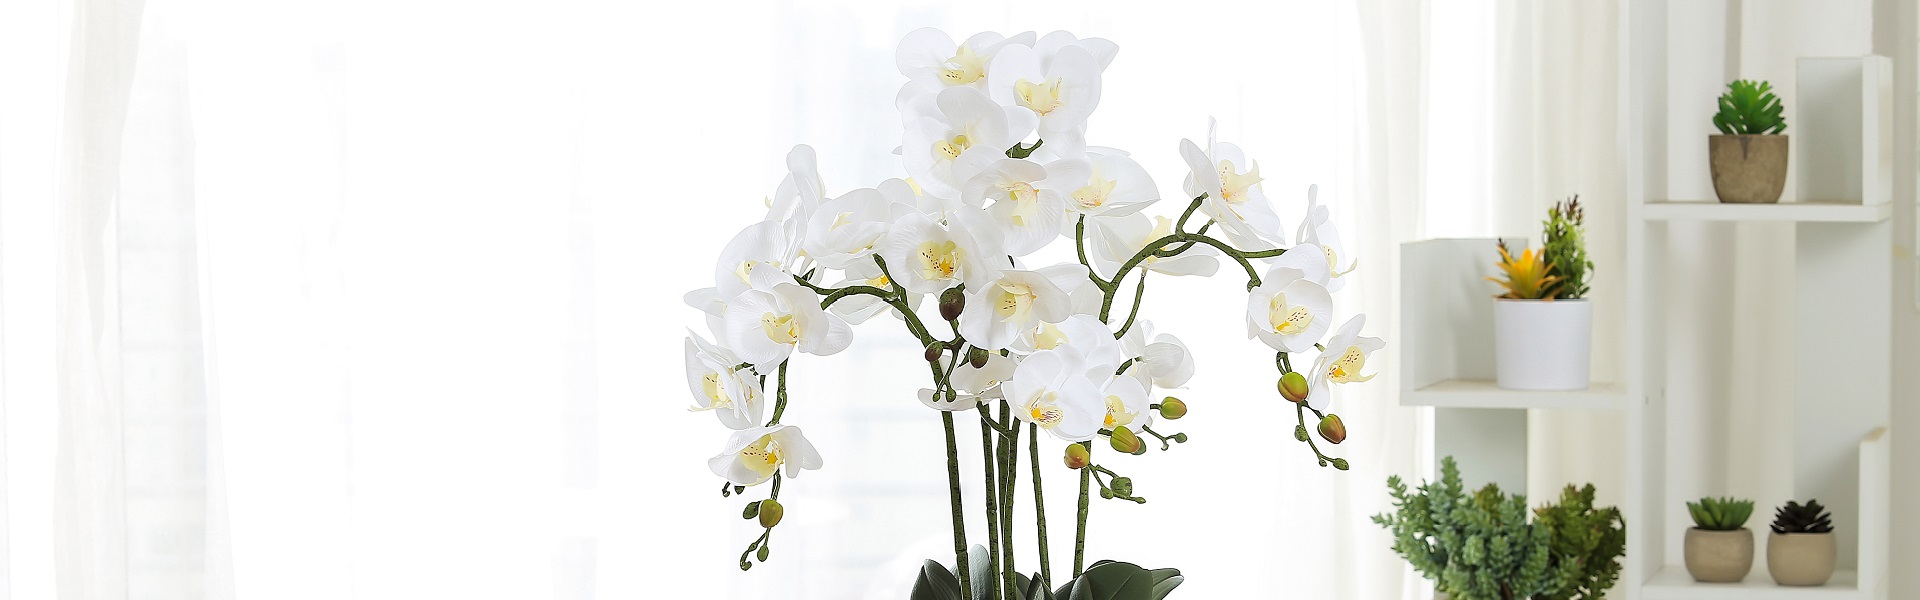 sztuczne rośliny, sztuczne sukulety, sztuczny kwiat,Huizhou Baifeng Arts&Crafts Co.,Ltd.